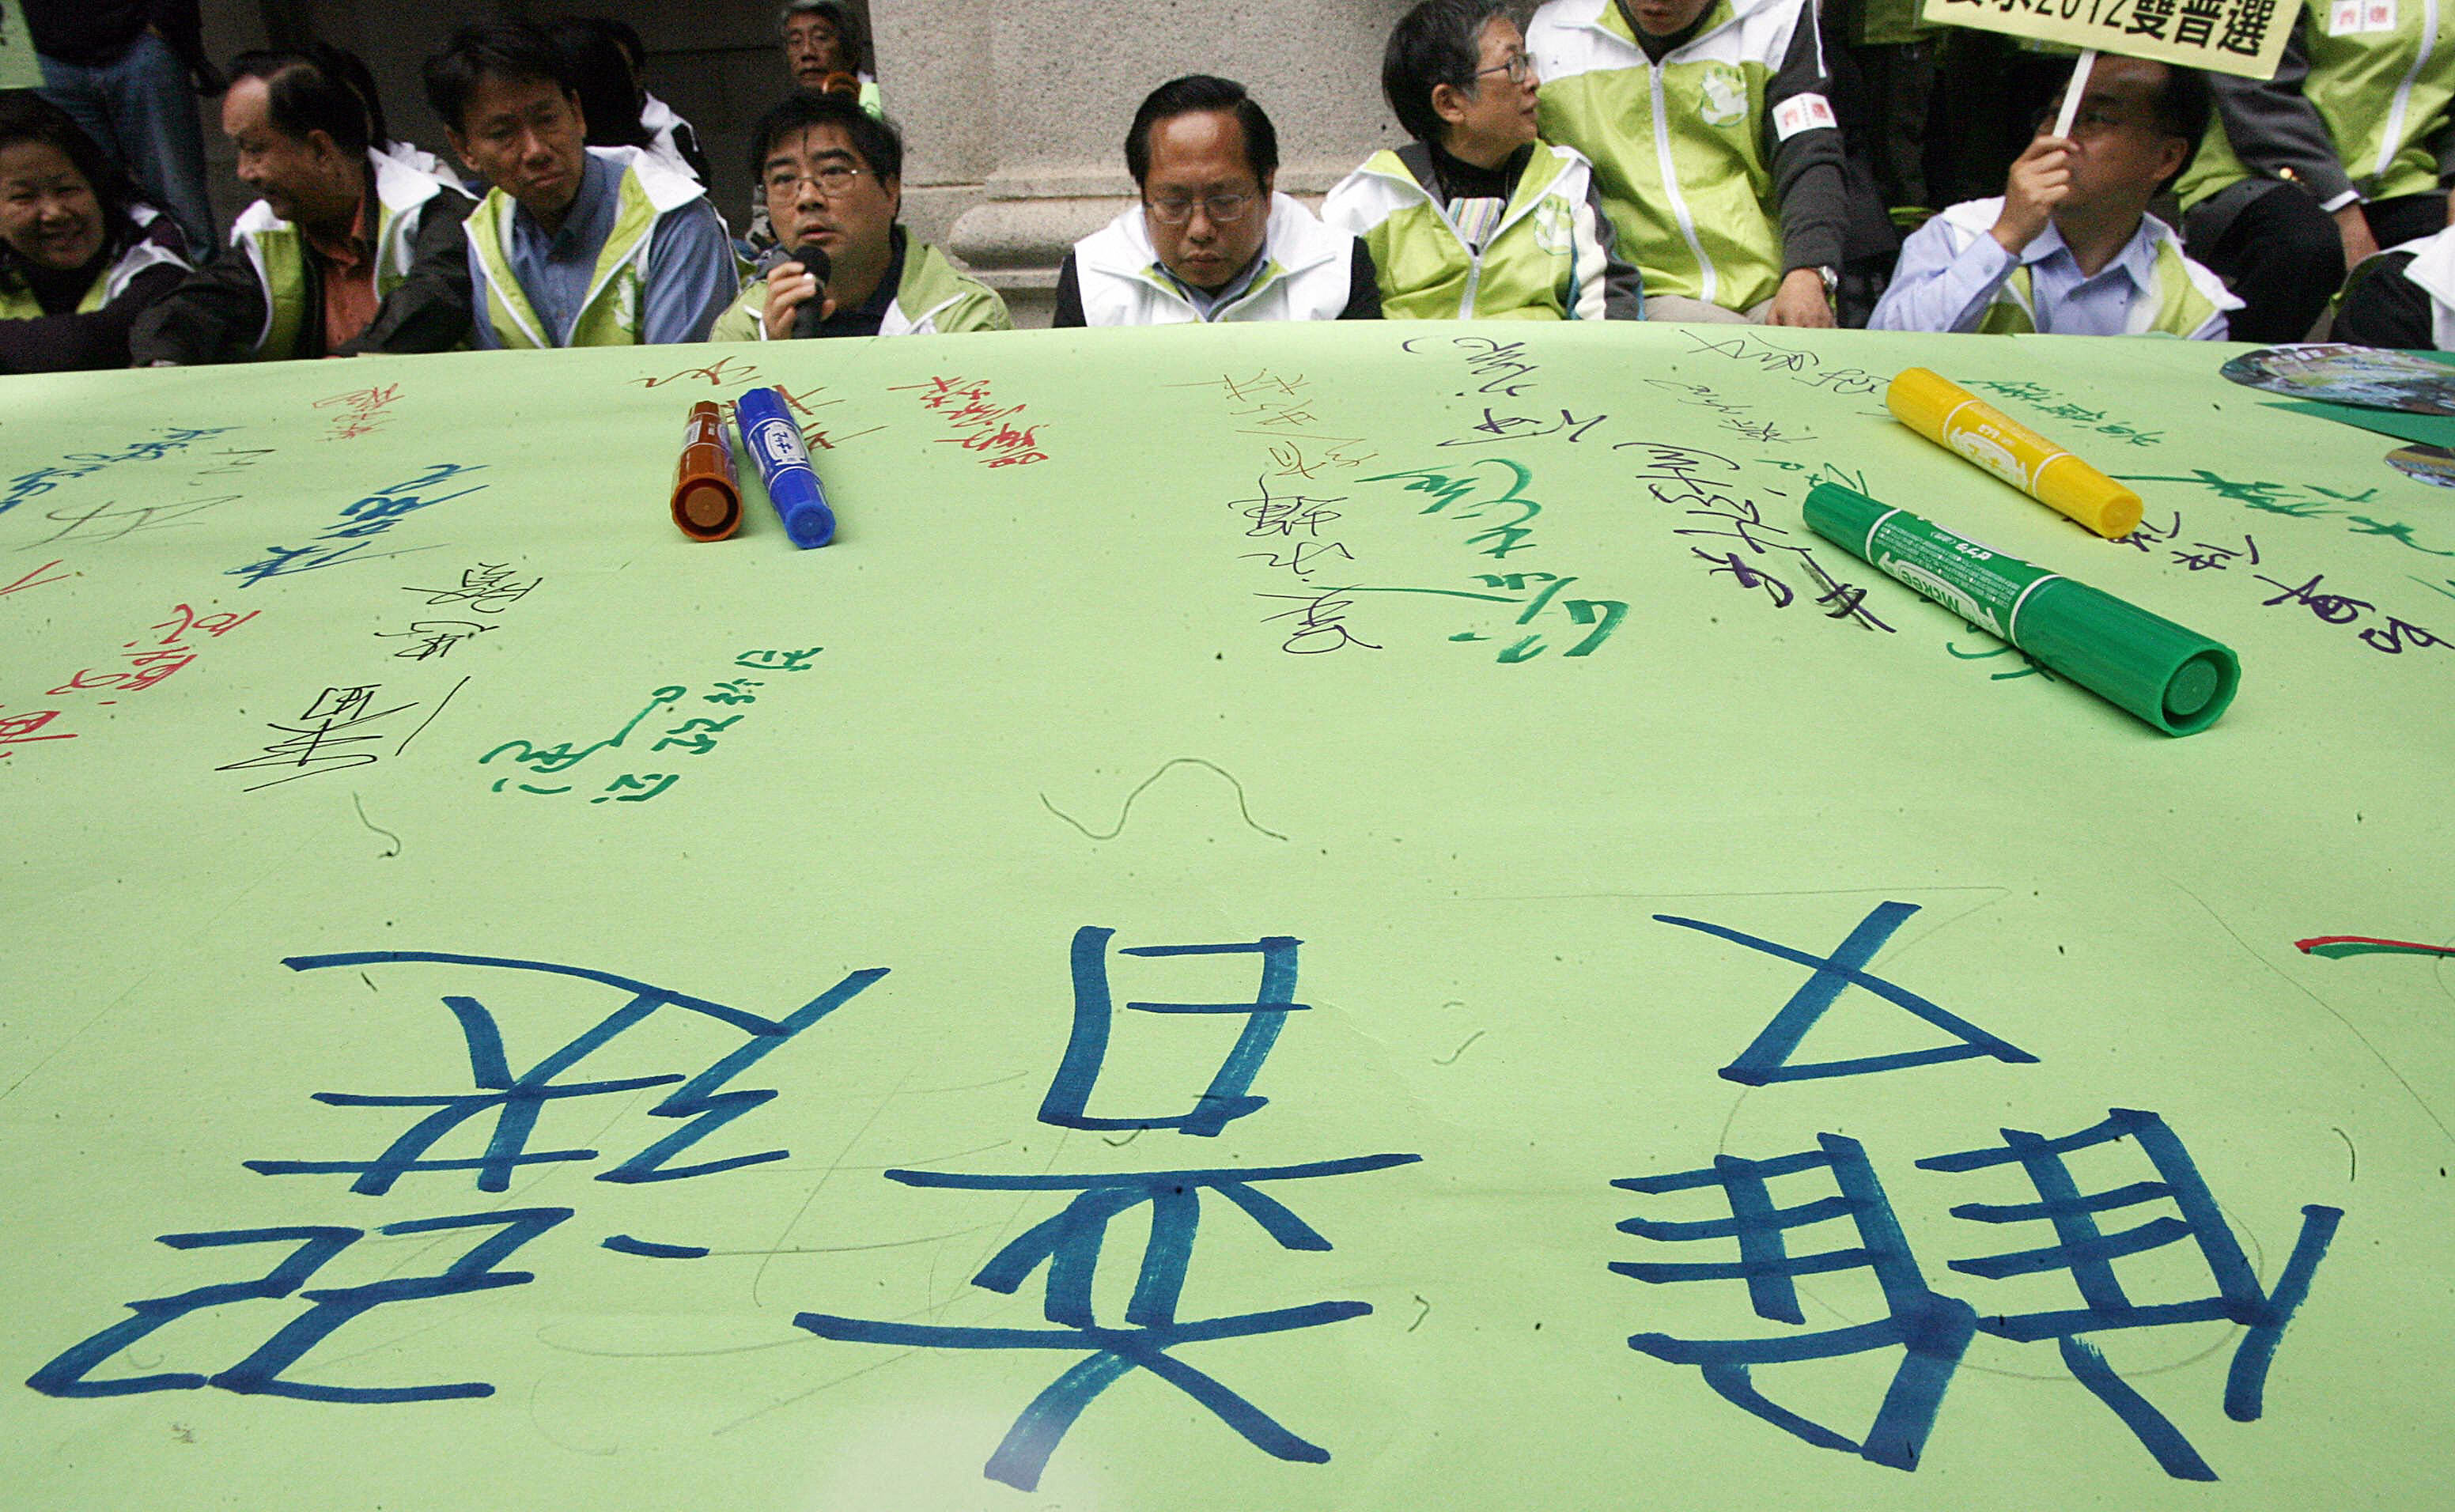 香港民主派人士期望的是特首和立法会的双普选。